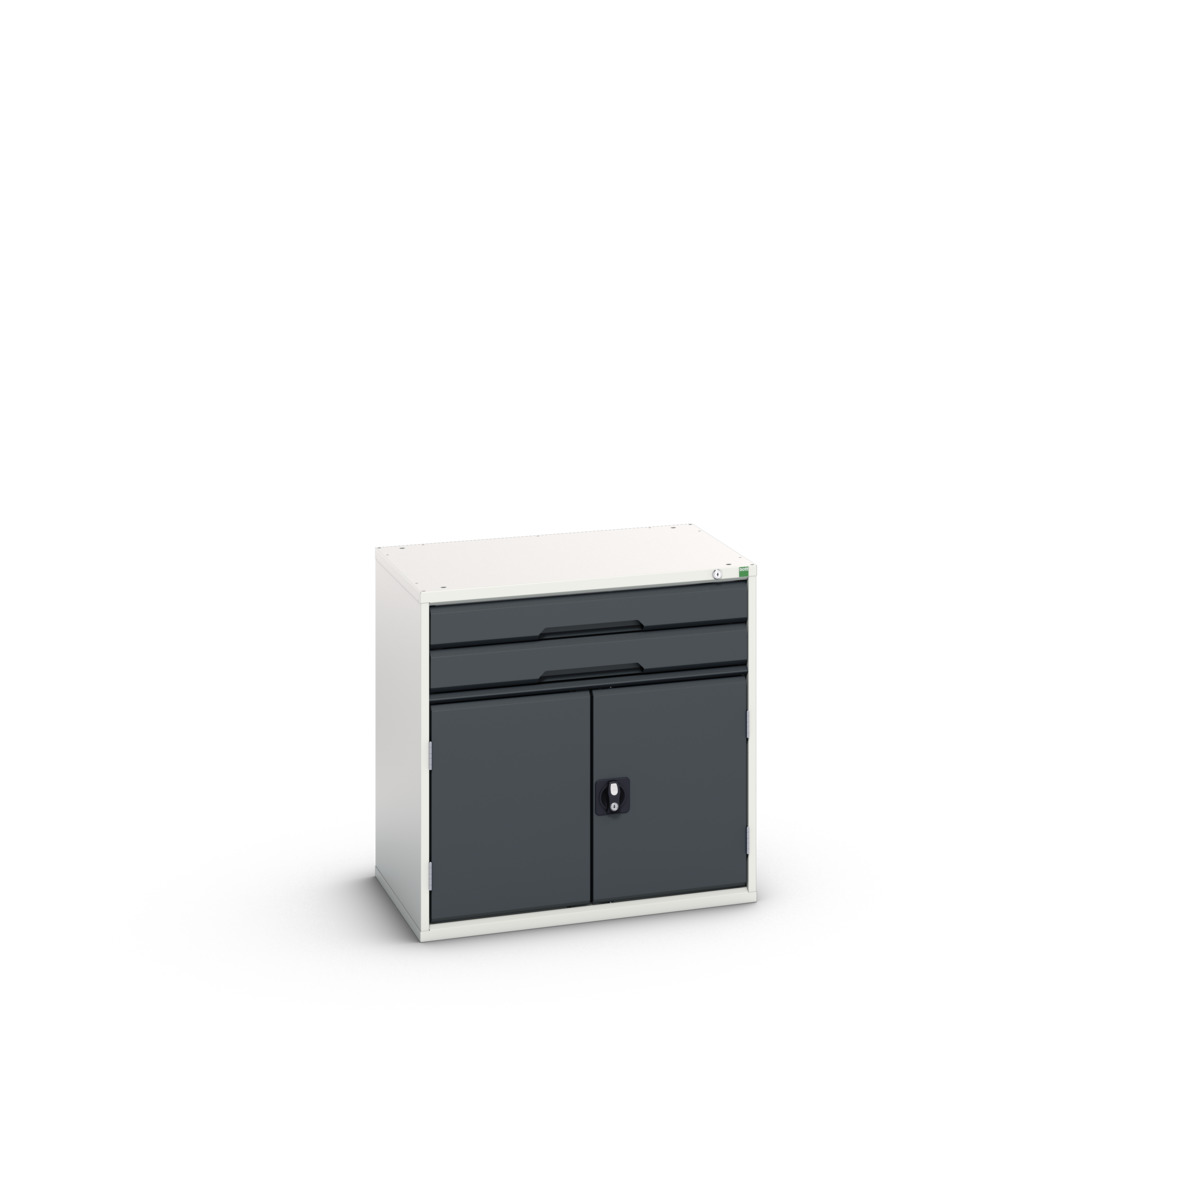 16925116.19 - verso drawer-door cabinet